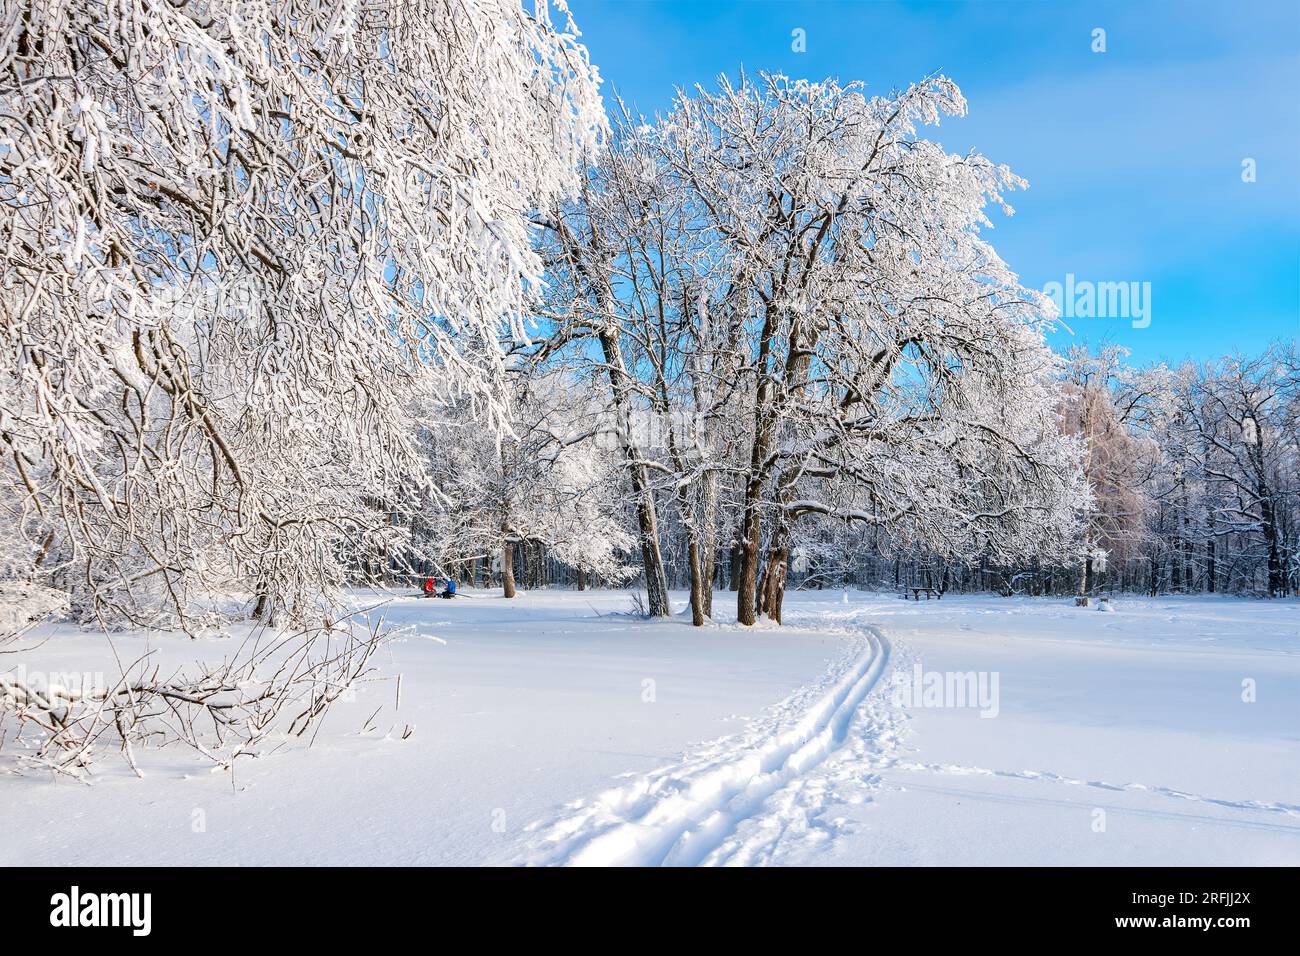 Winterski im verschneiten Wald im Hintergrund. Schneebedeckte Eichenbäume mit Winterwaldlandschaft. Frostiger Tag, ruhige winterliche Szene. Skigebiet. Ein tolles Bild von der wilden Gegend Stockfoto